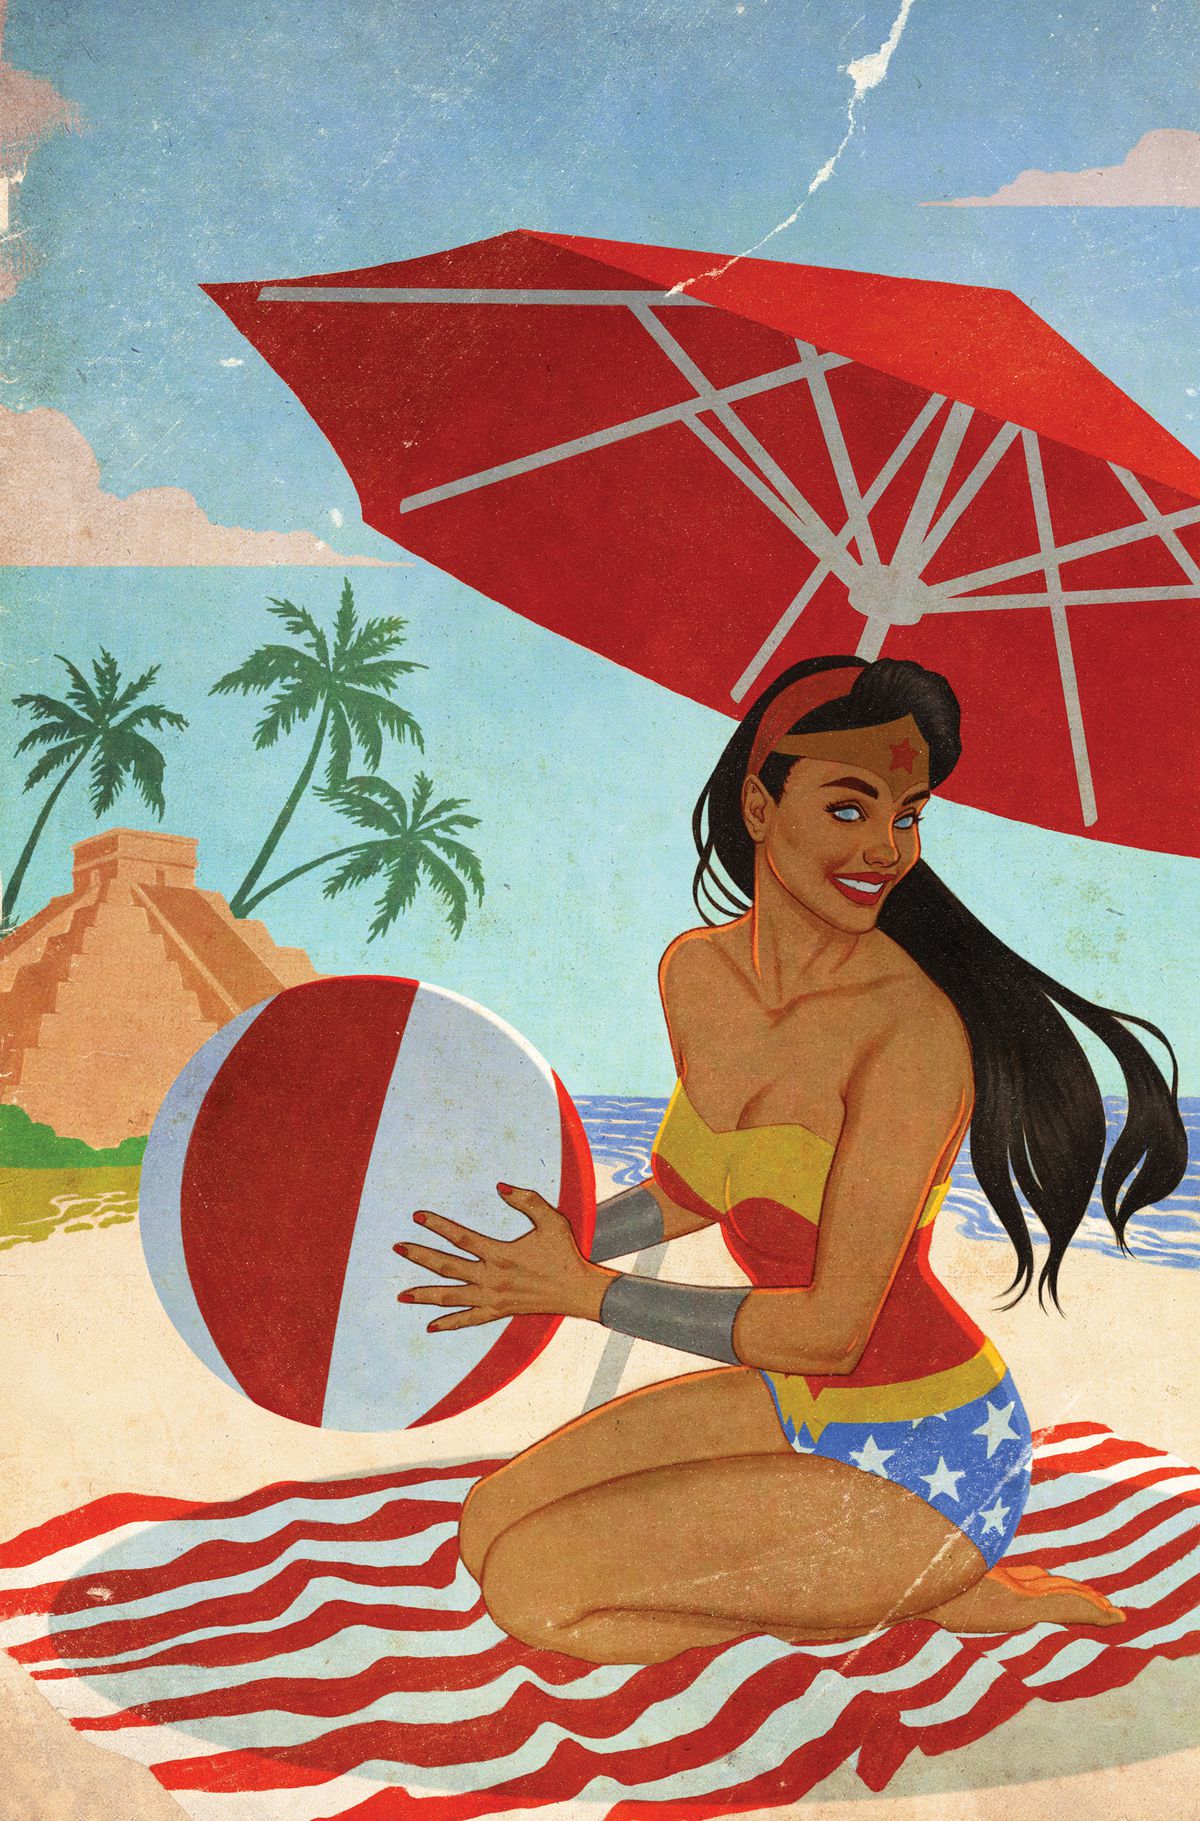 Wonder Woman si inginocchia tenendo un pallone da spiaggia sulla spiaggia, indossando un costume da bagno che ricorda il suo costume. 